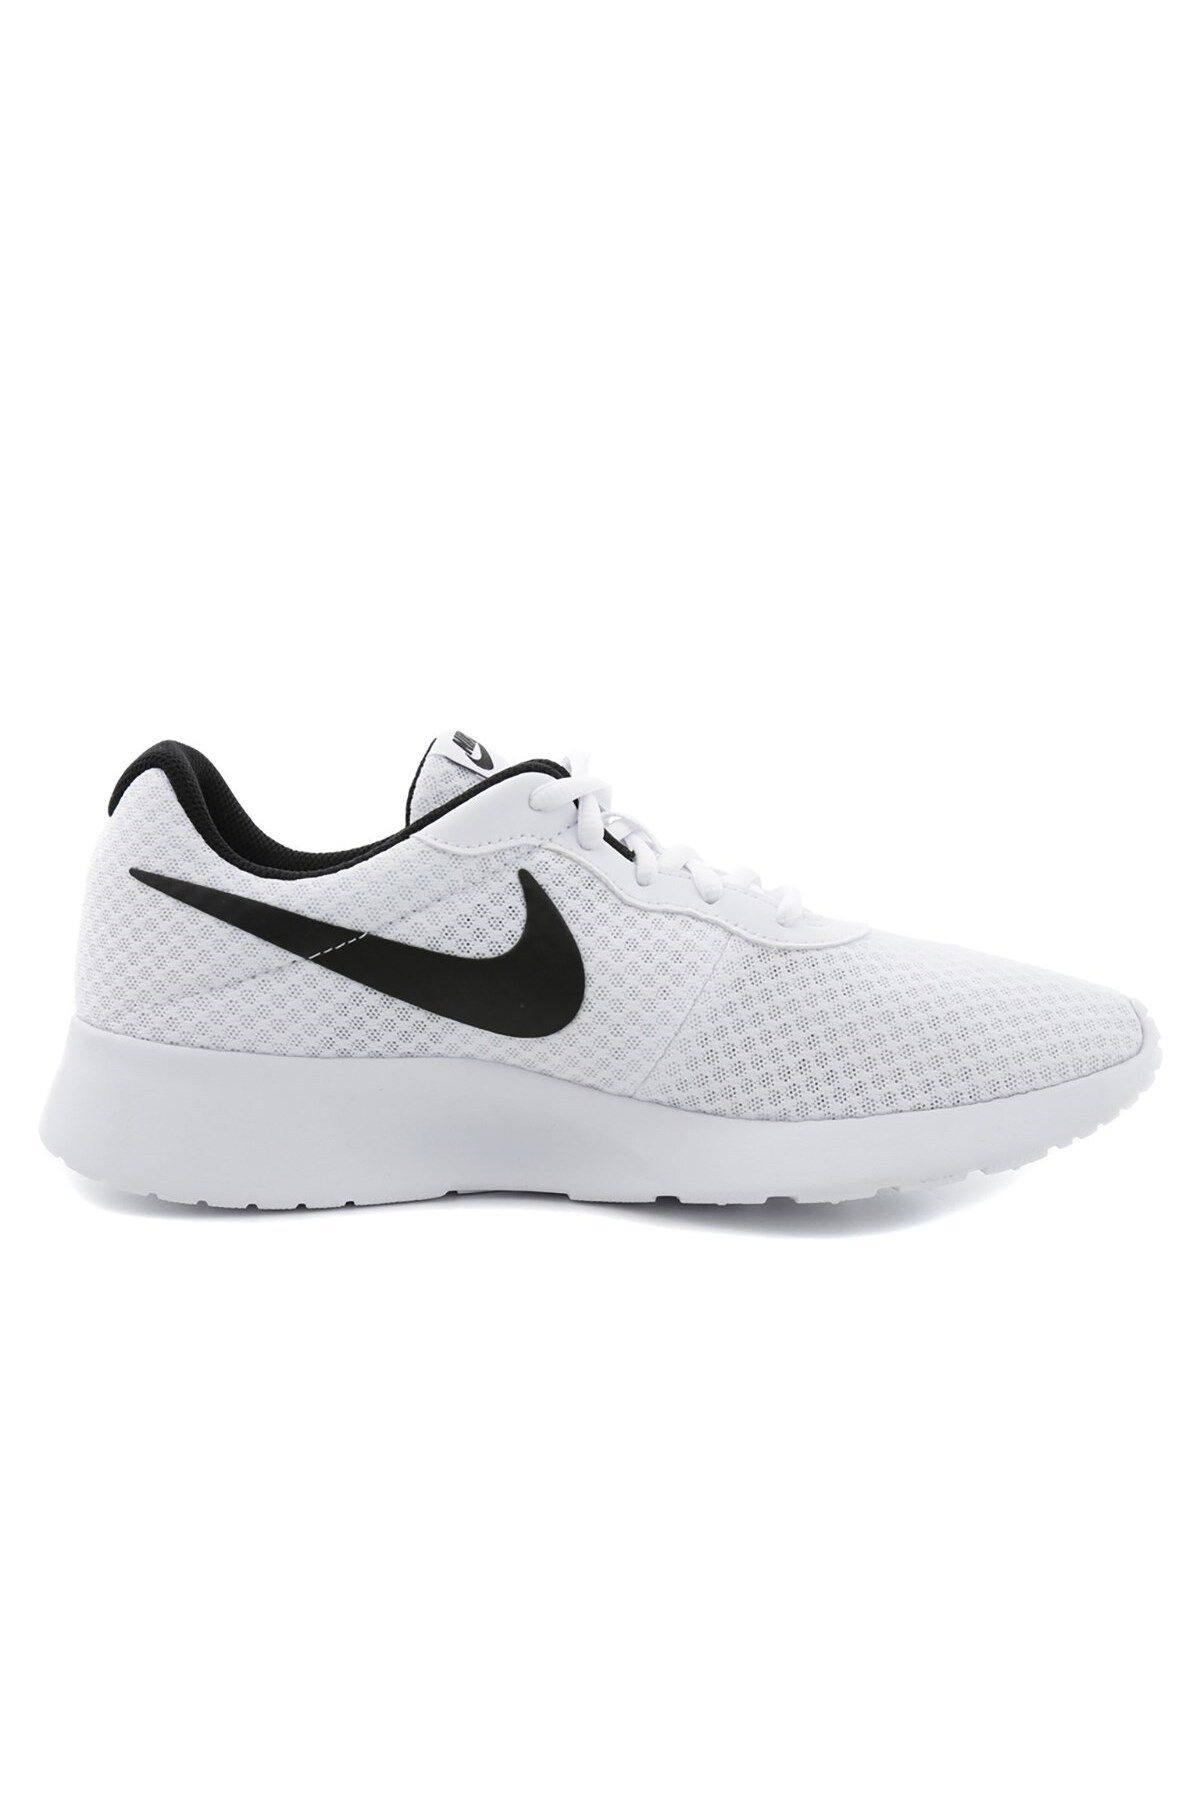 Nike Tanjun 812654-101 Spor Ayakkabı Beyaz